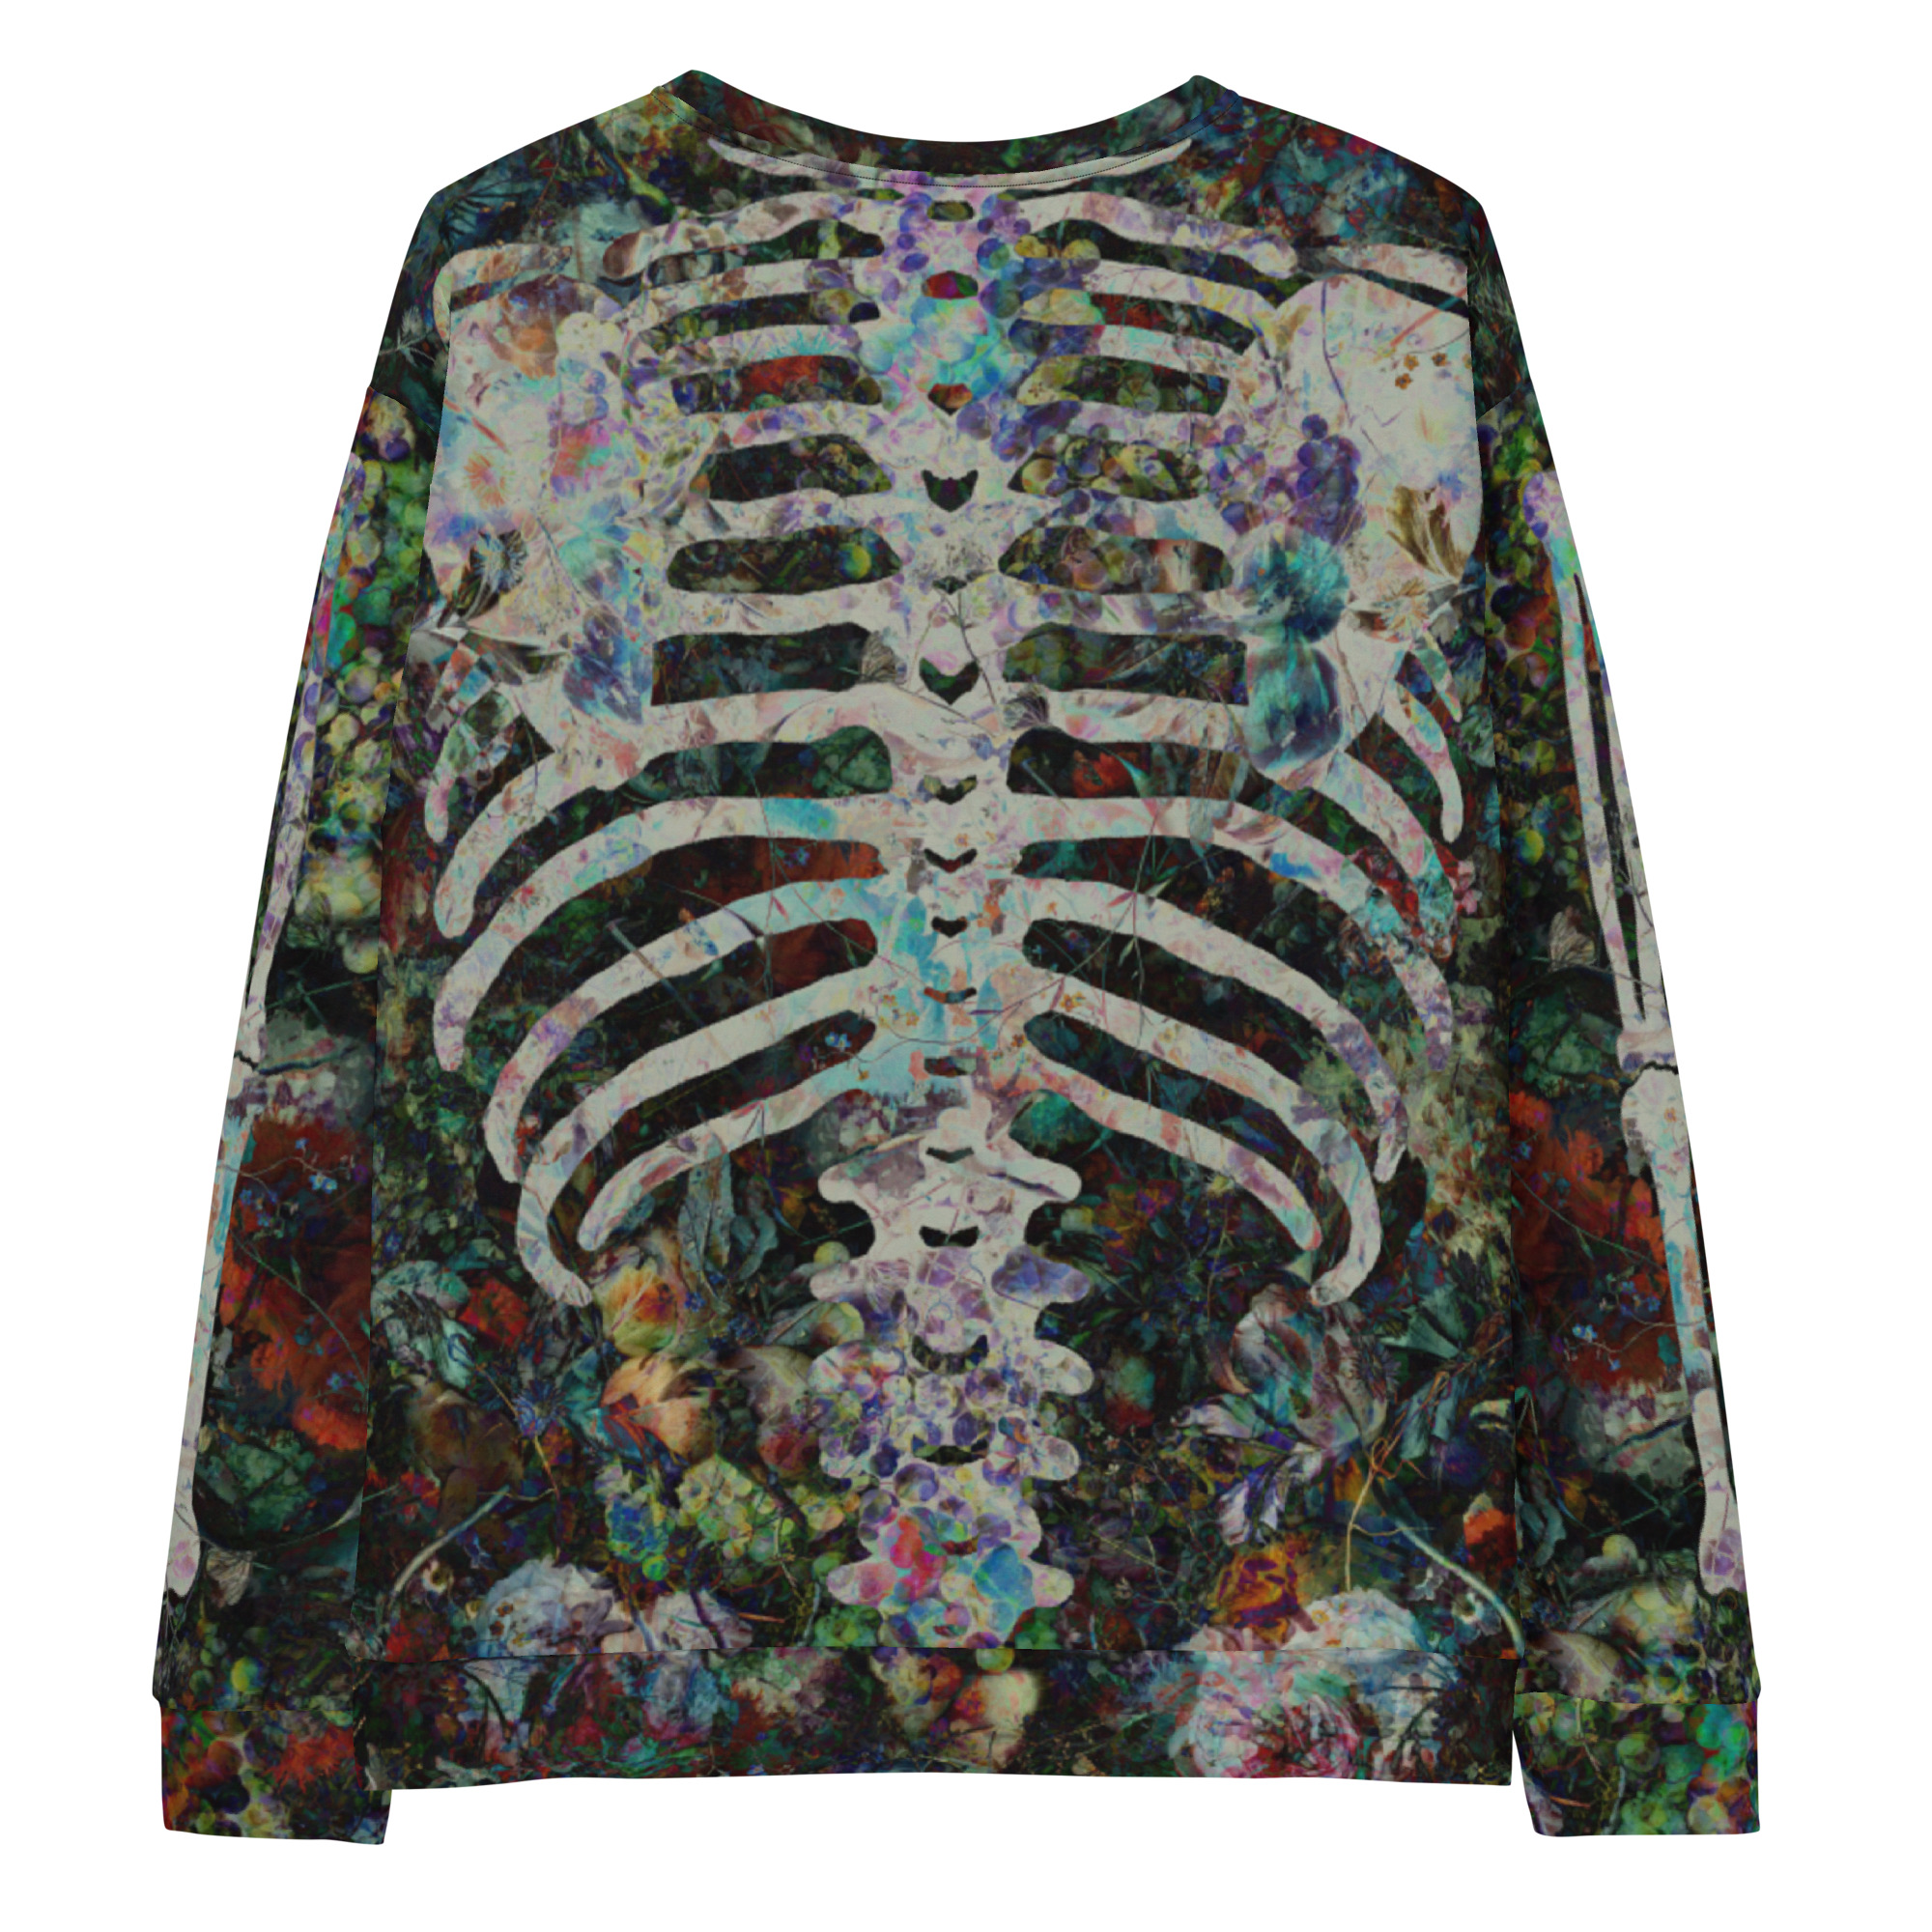 Featured image for “Victorian Bones - Unisex Sweatshirt”